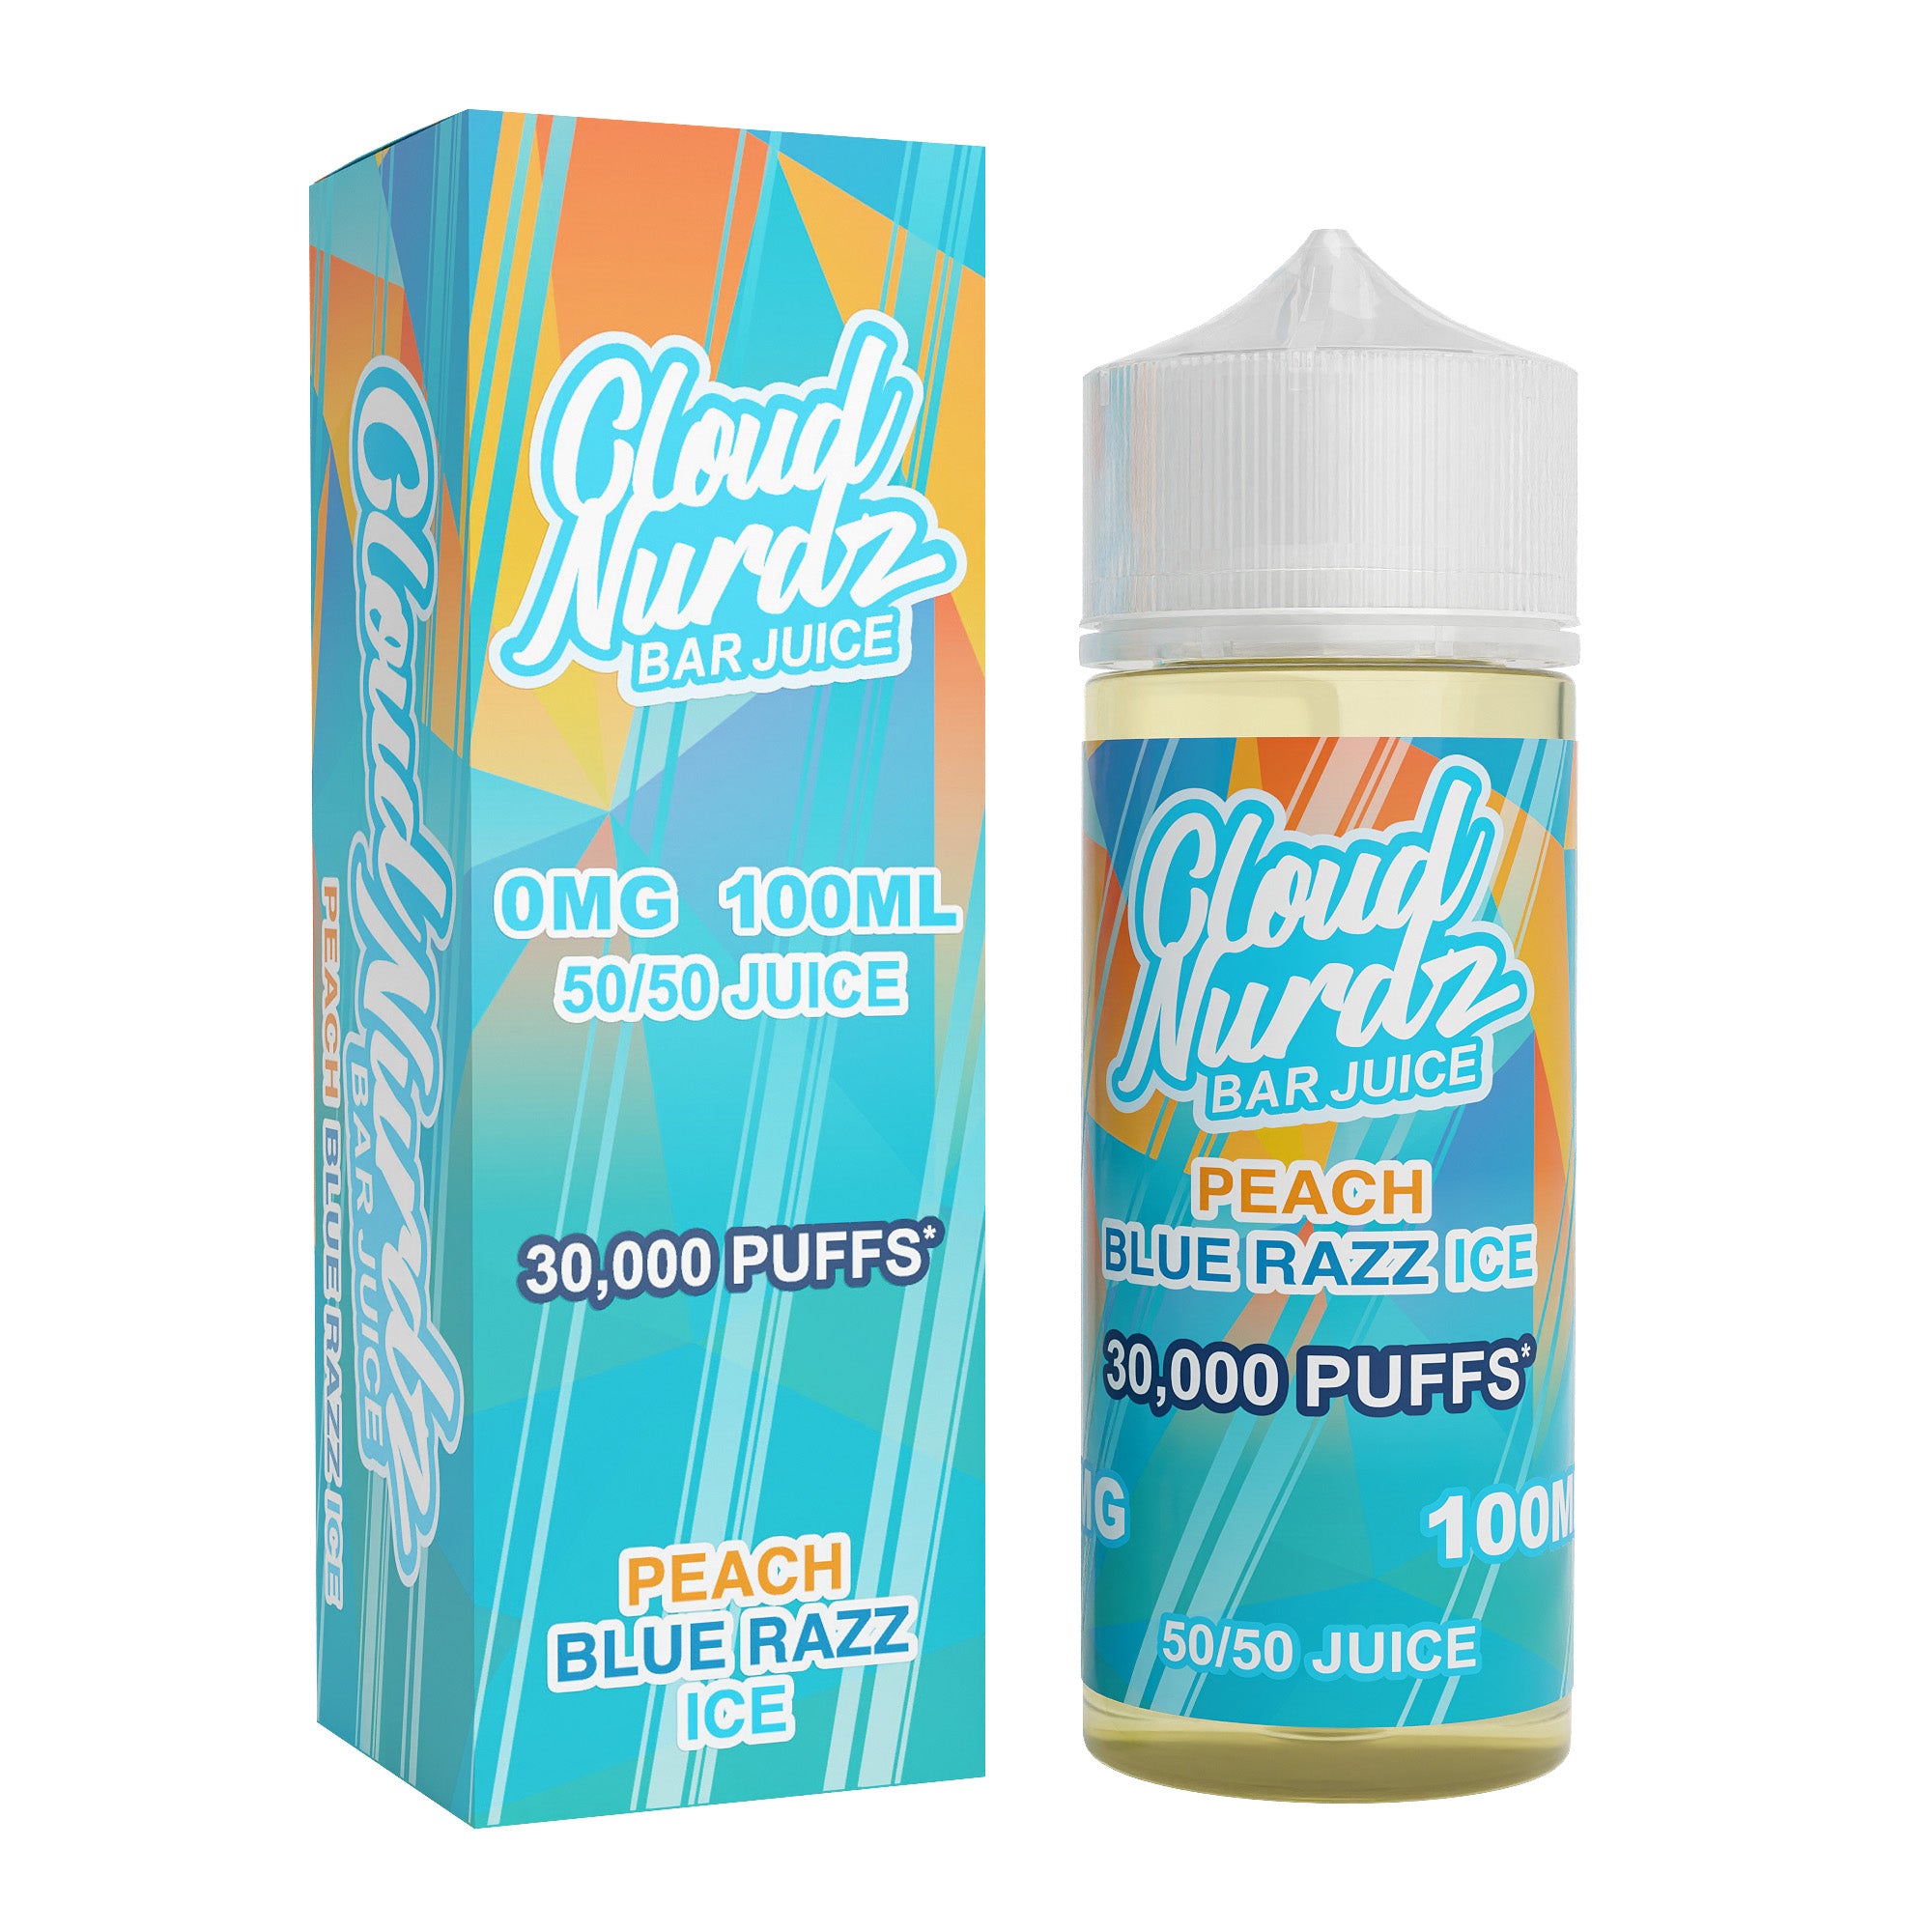 Cloud Nurdz Peach Blue Razz Iced 0mg 100ml Shortfill E-Liquid